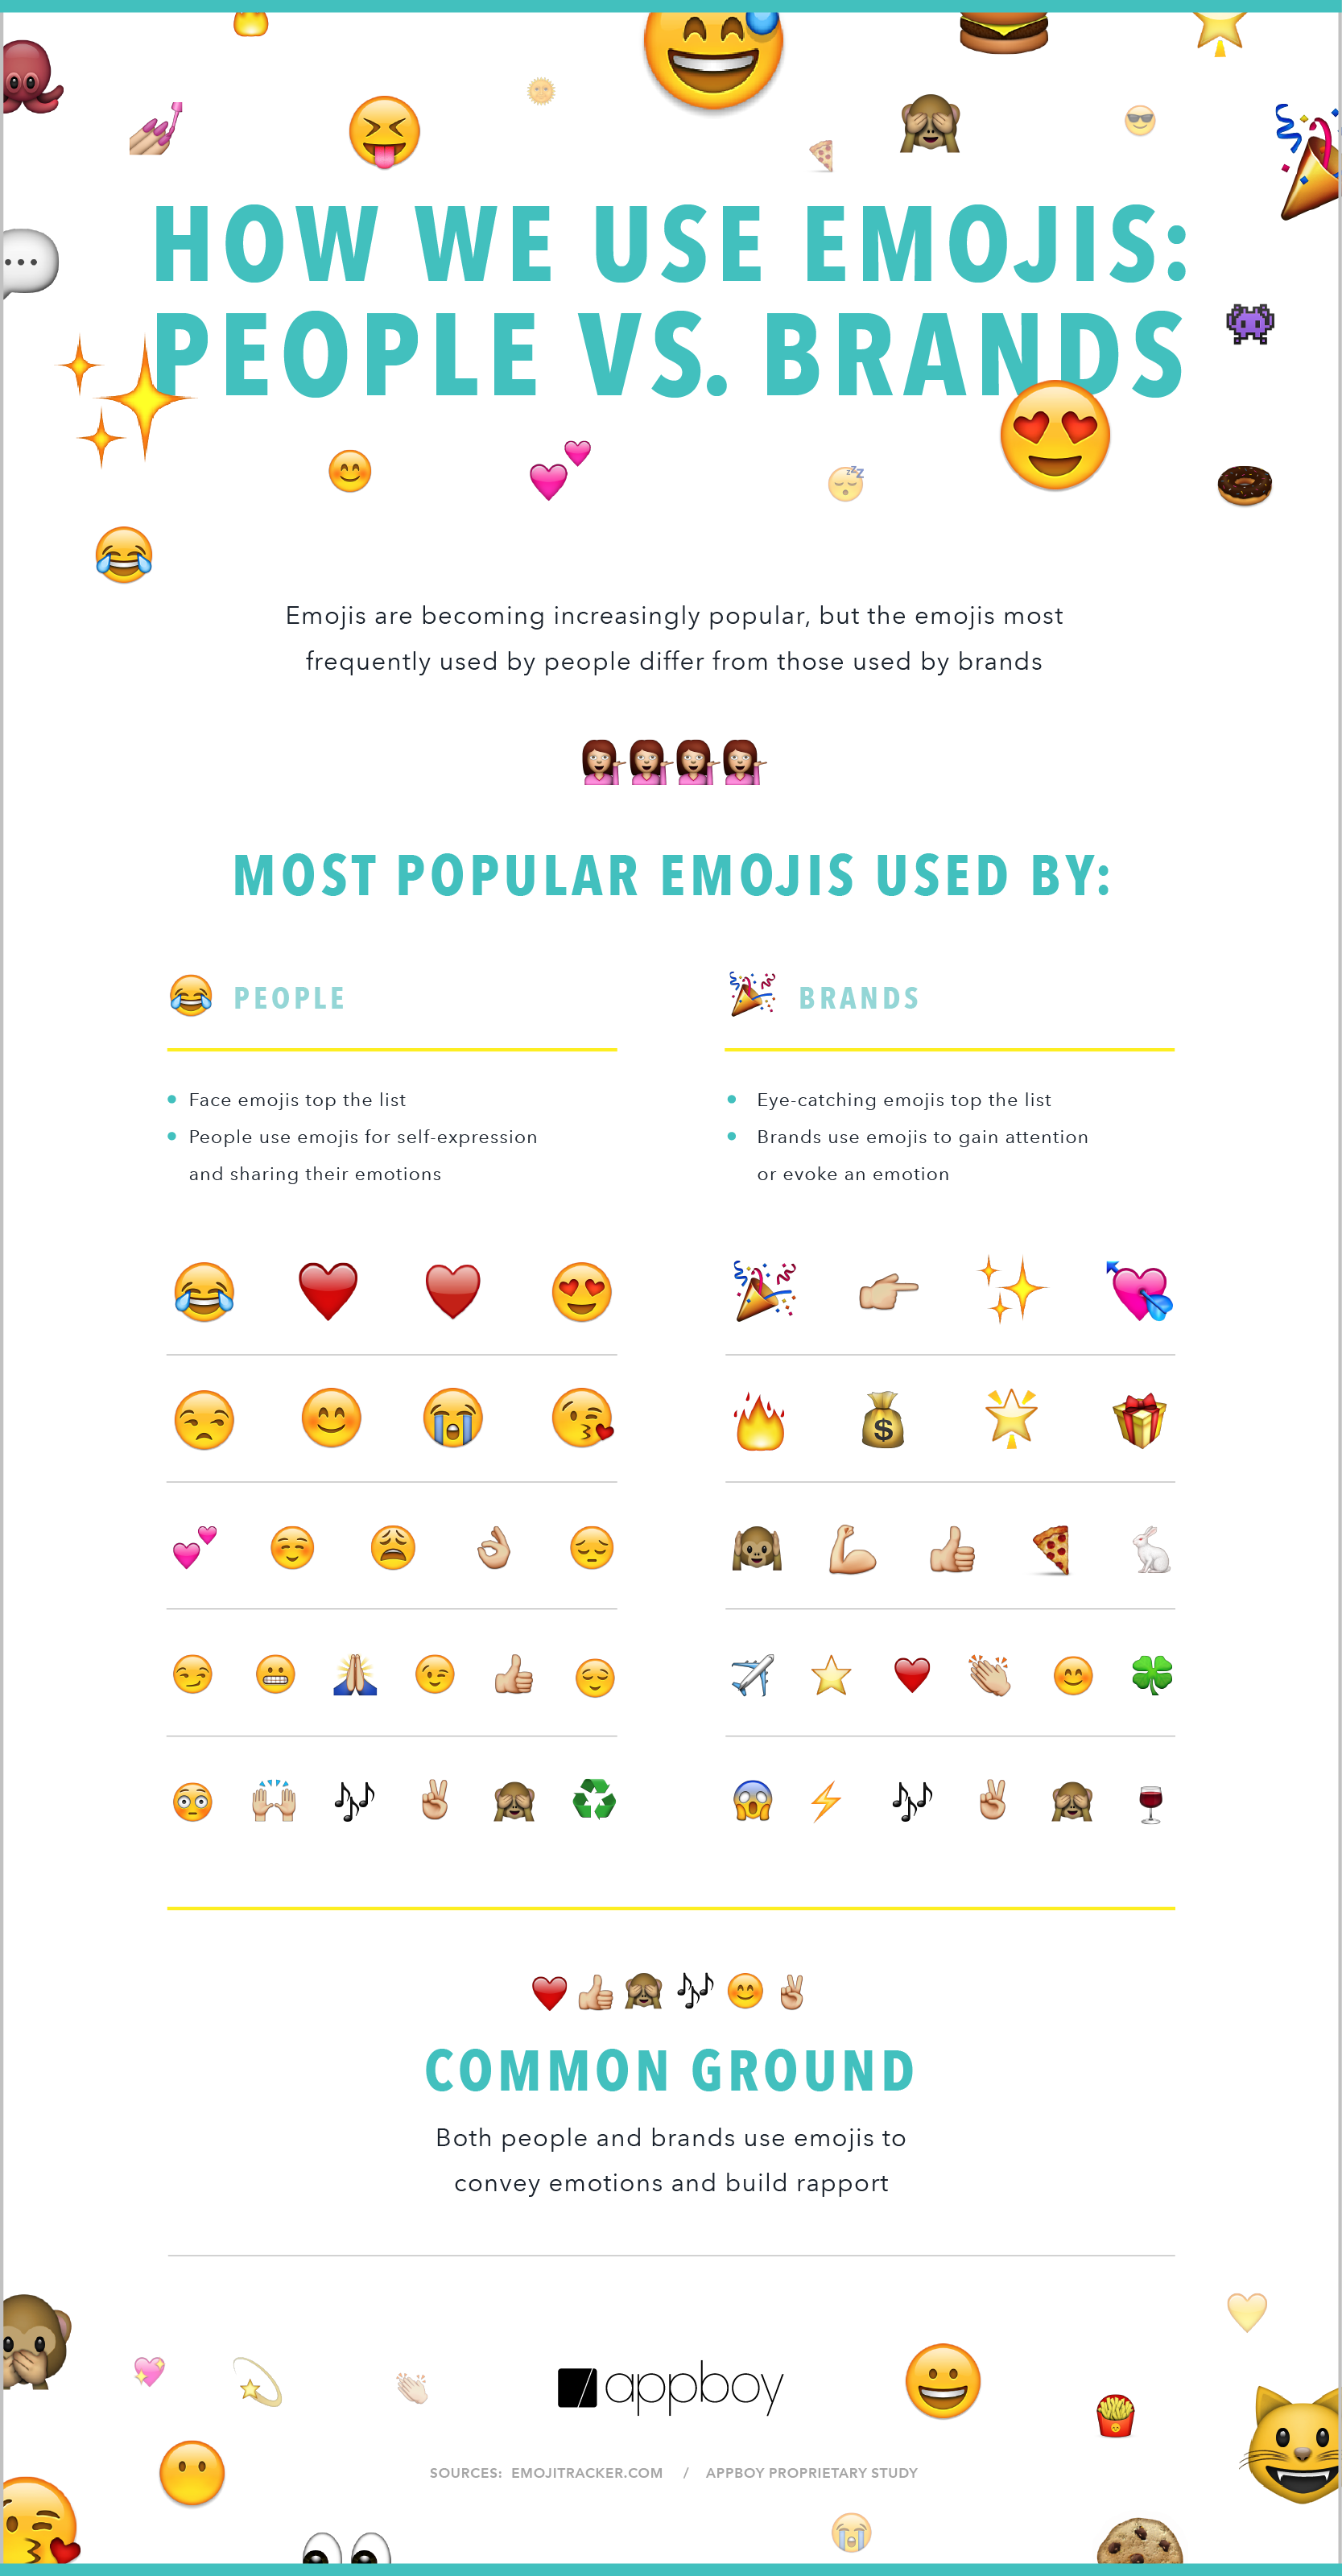 Les emojis utilisés par les marques et les internautes